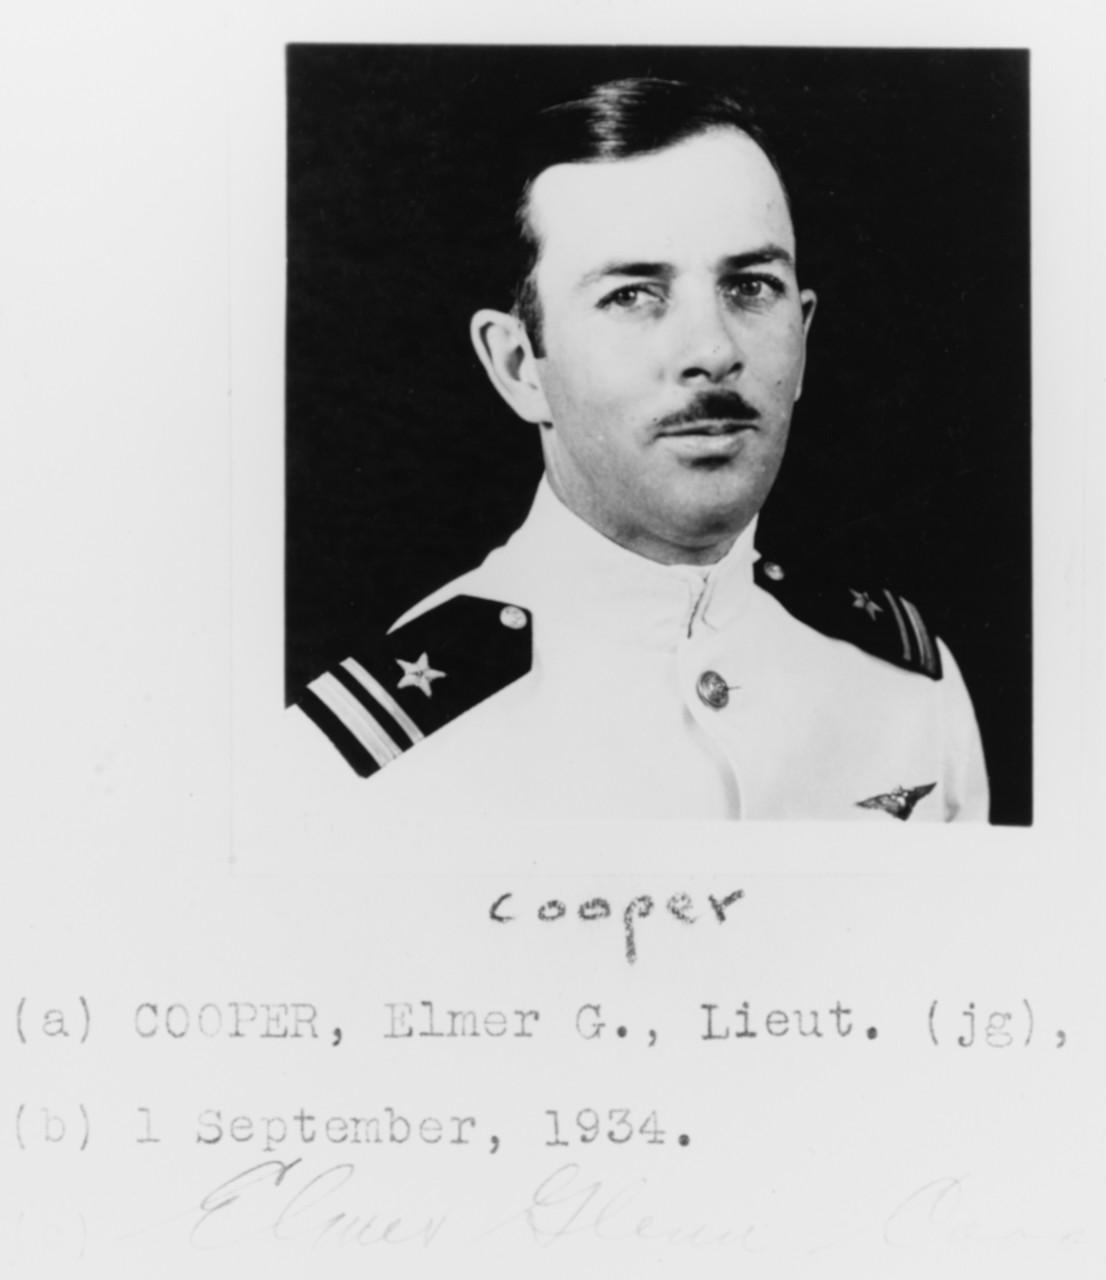 Lieutenant Junior Grade Elmer G. Cooper, USN